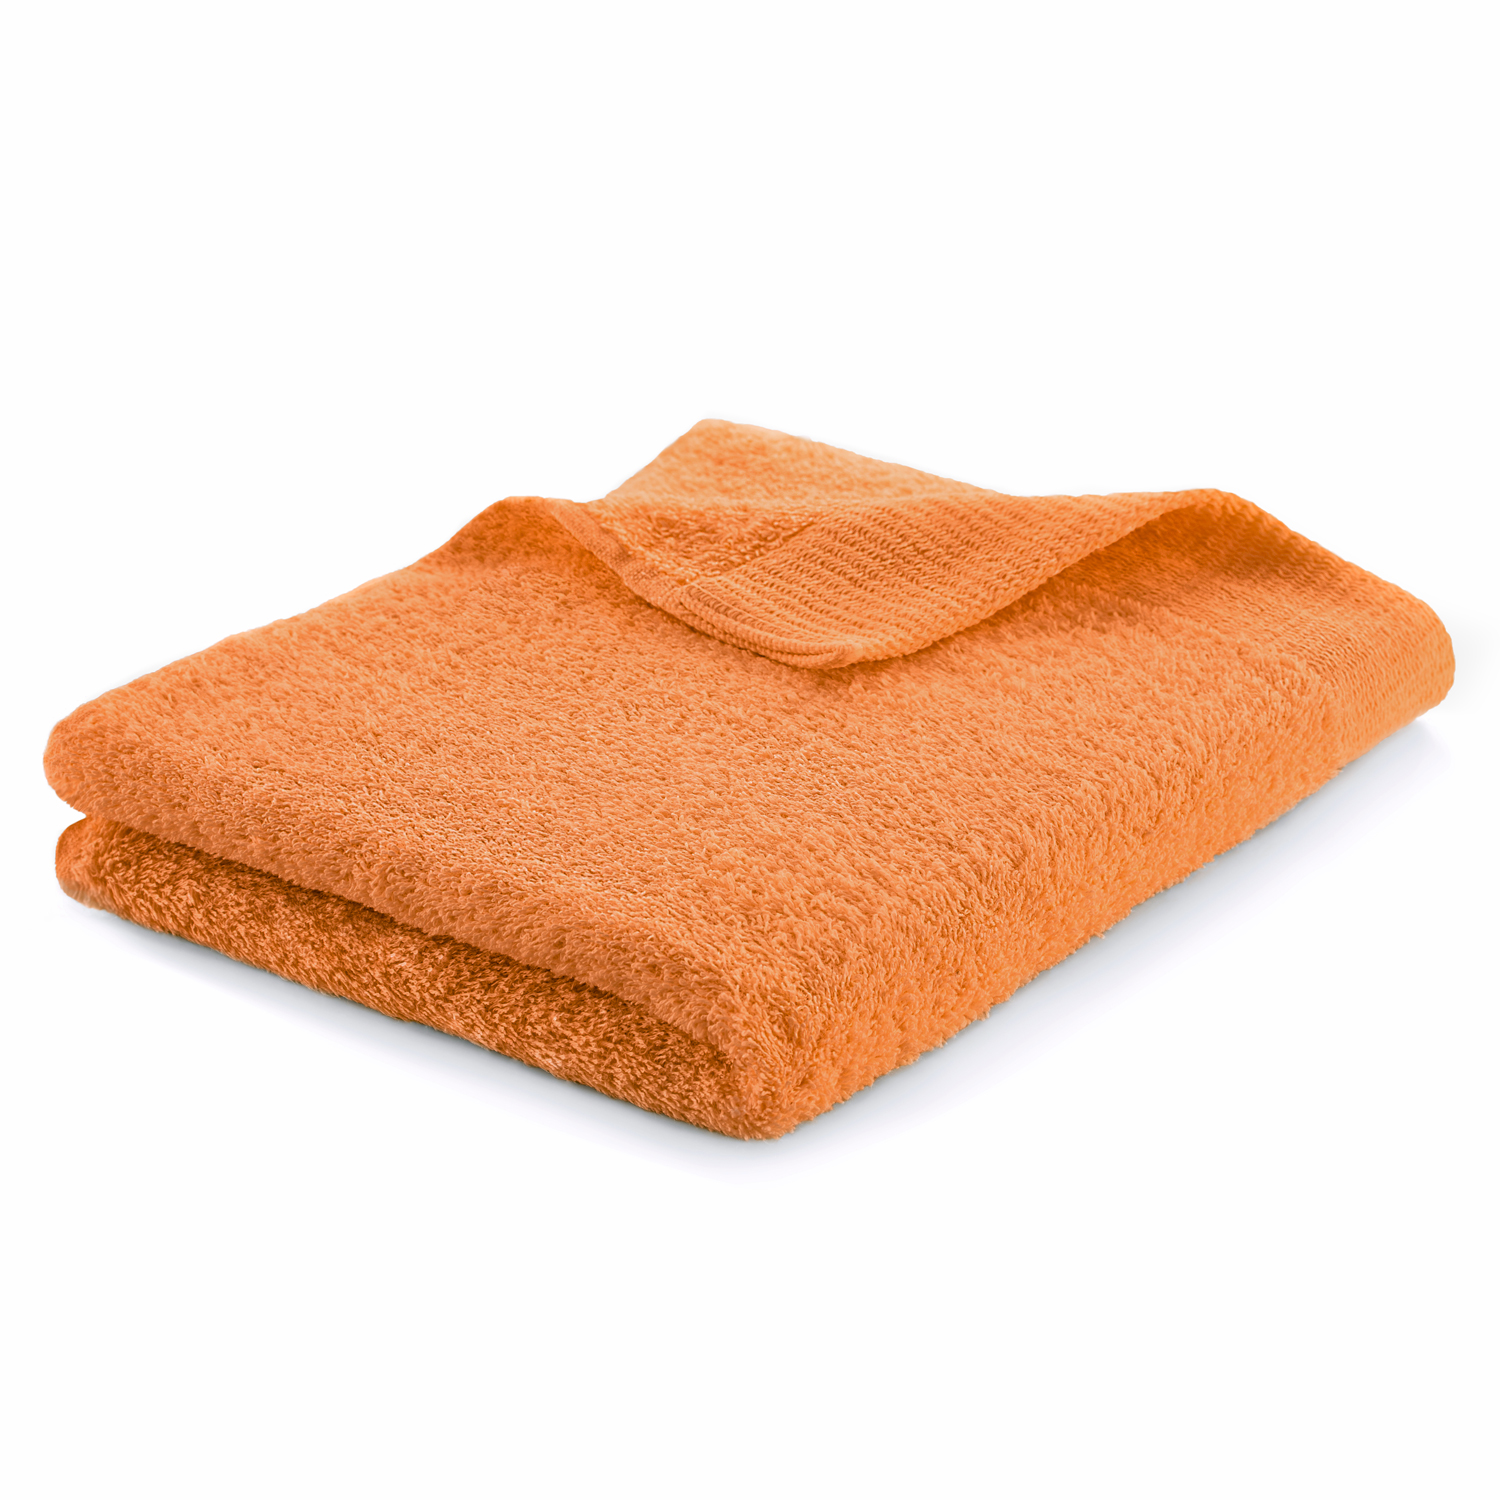 Osuška - Kúpanie uteráka 500 PLN VEĽKÁ BANKNOTE 100% bavlna